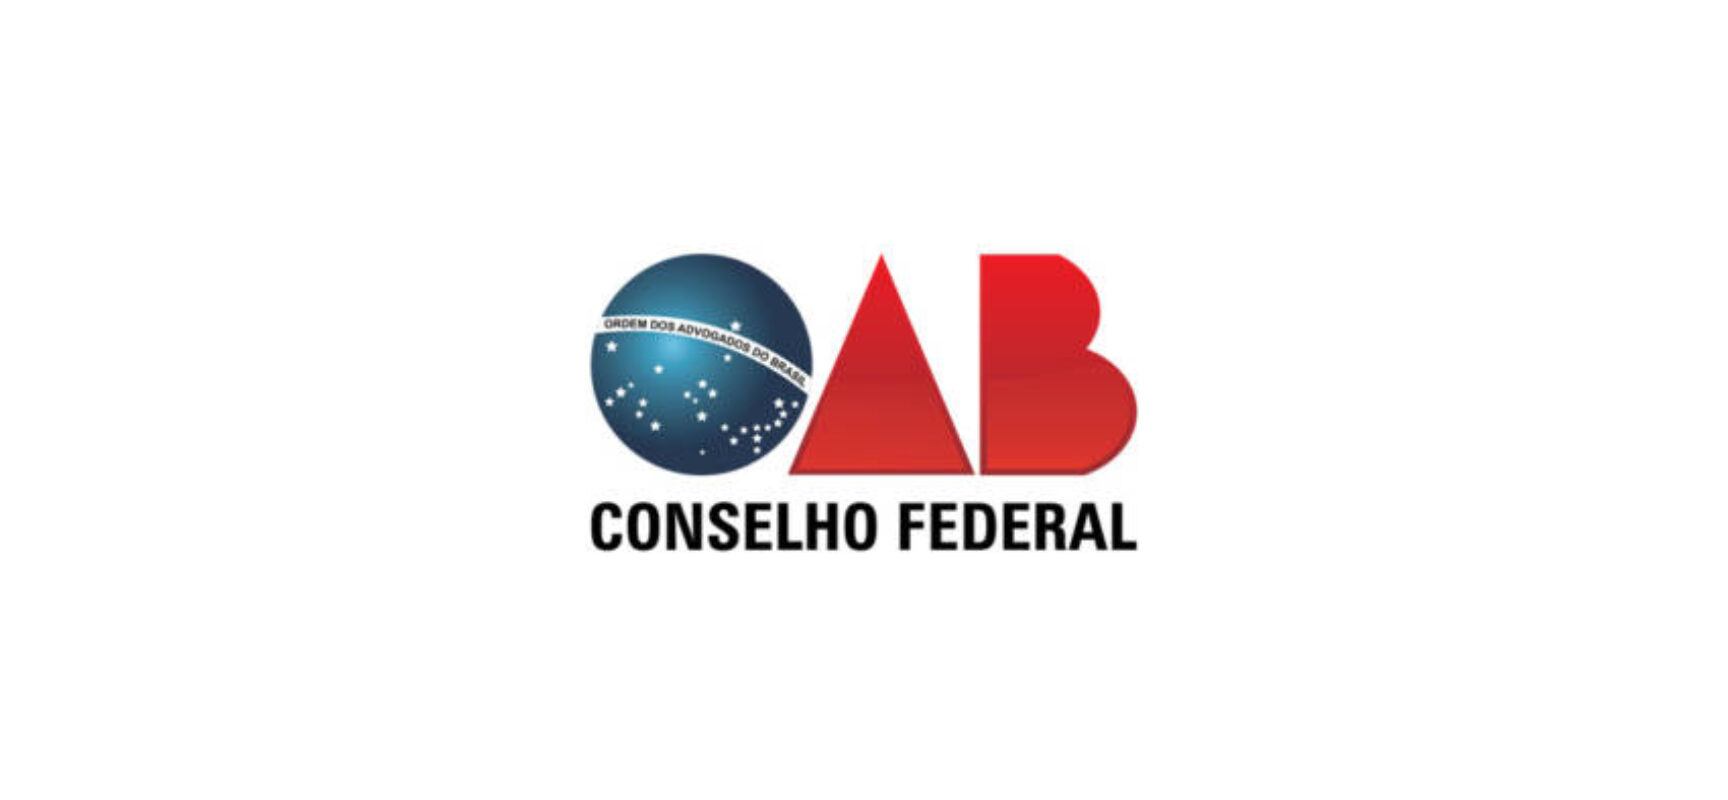 OAB vs. Portugal: Fim do acordo mútuo e suas implicações